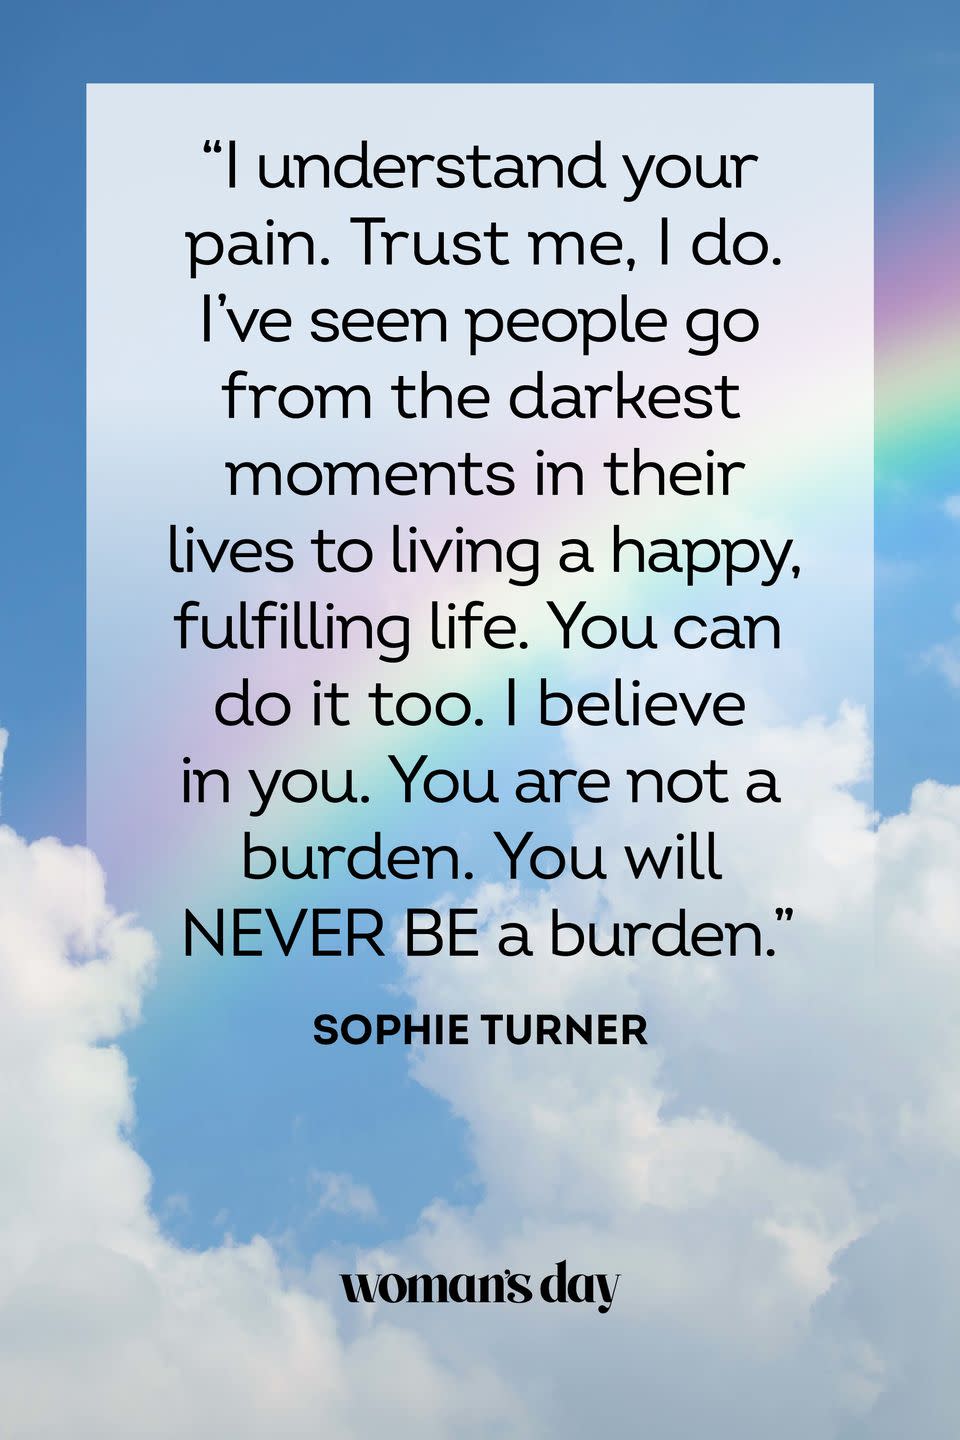 10) Sophie Turner